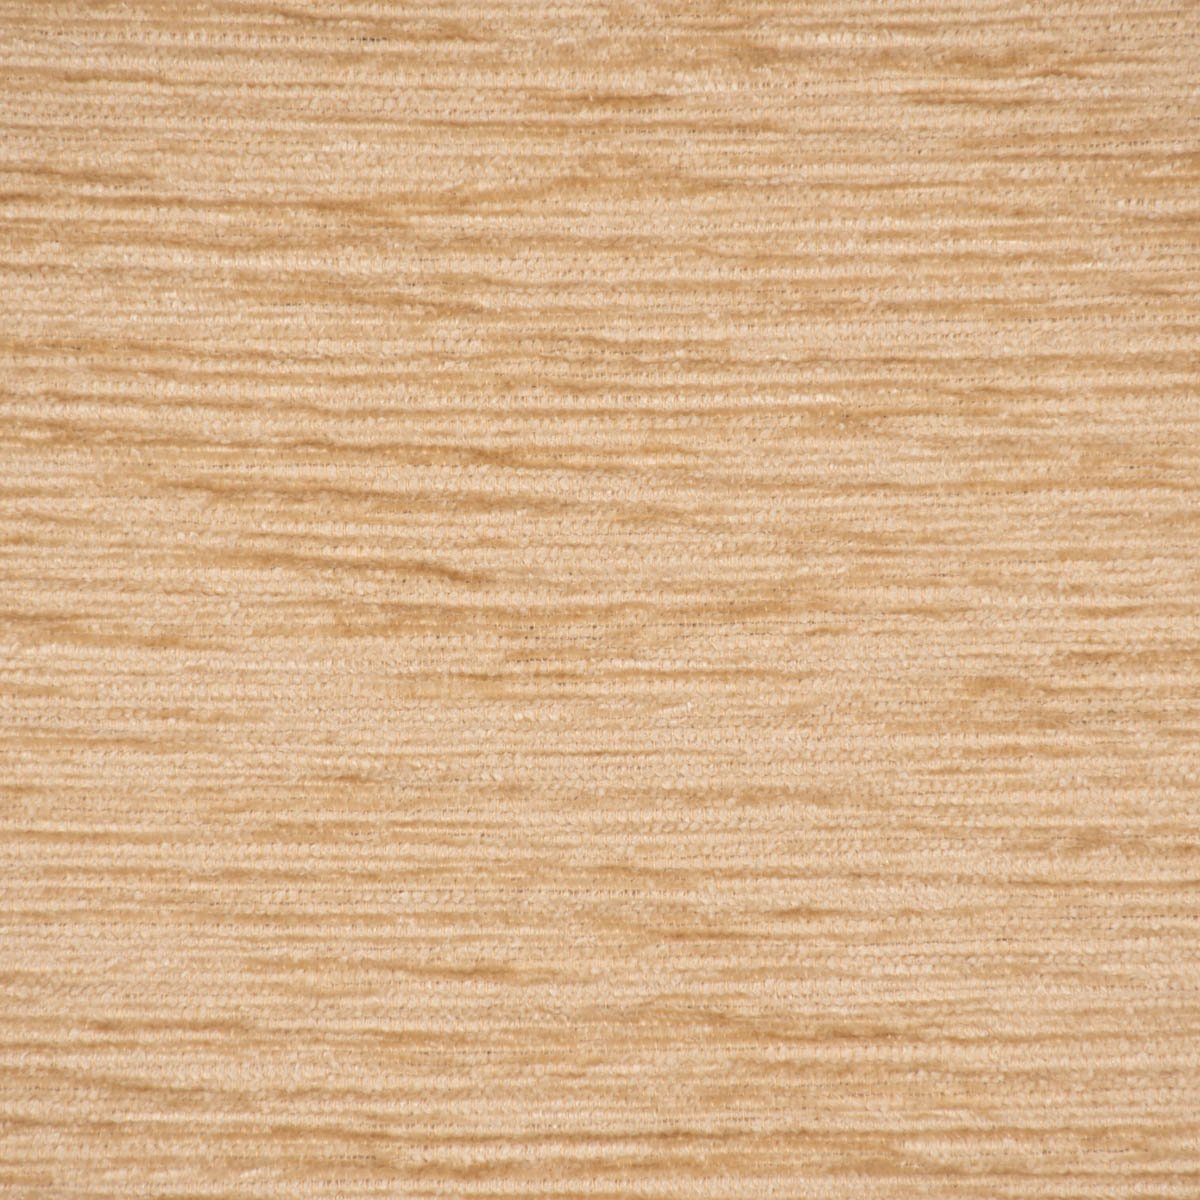 SCHÖNER LEBEN. Stoff Meterware Wärmevorhangstoff Thermochenille sand beige  1,40m Breite, made in Germany